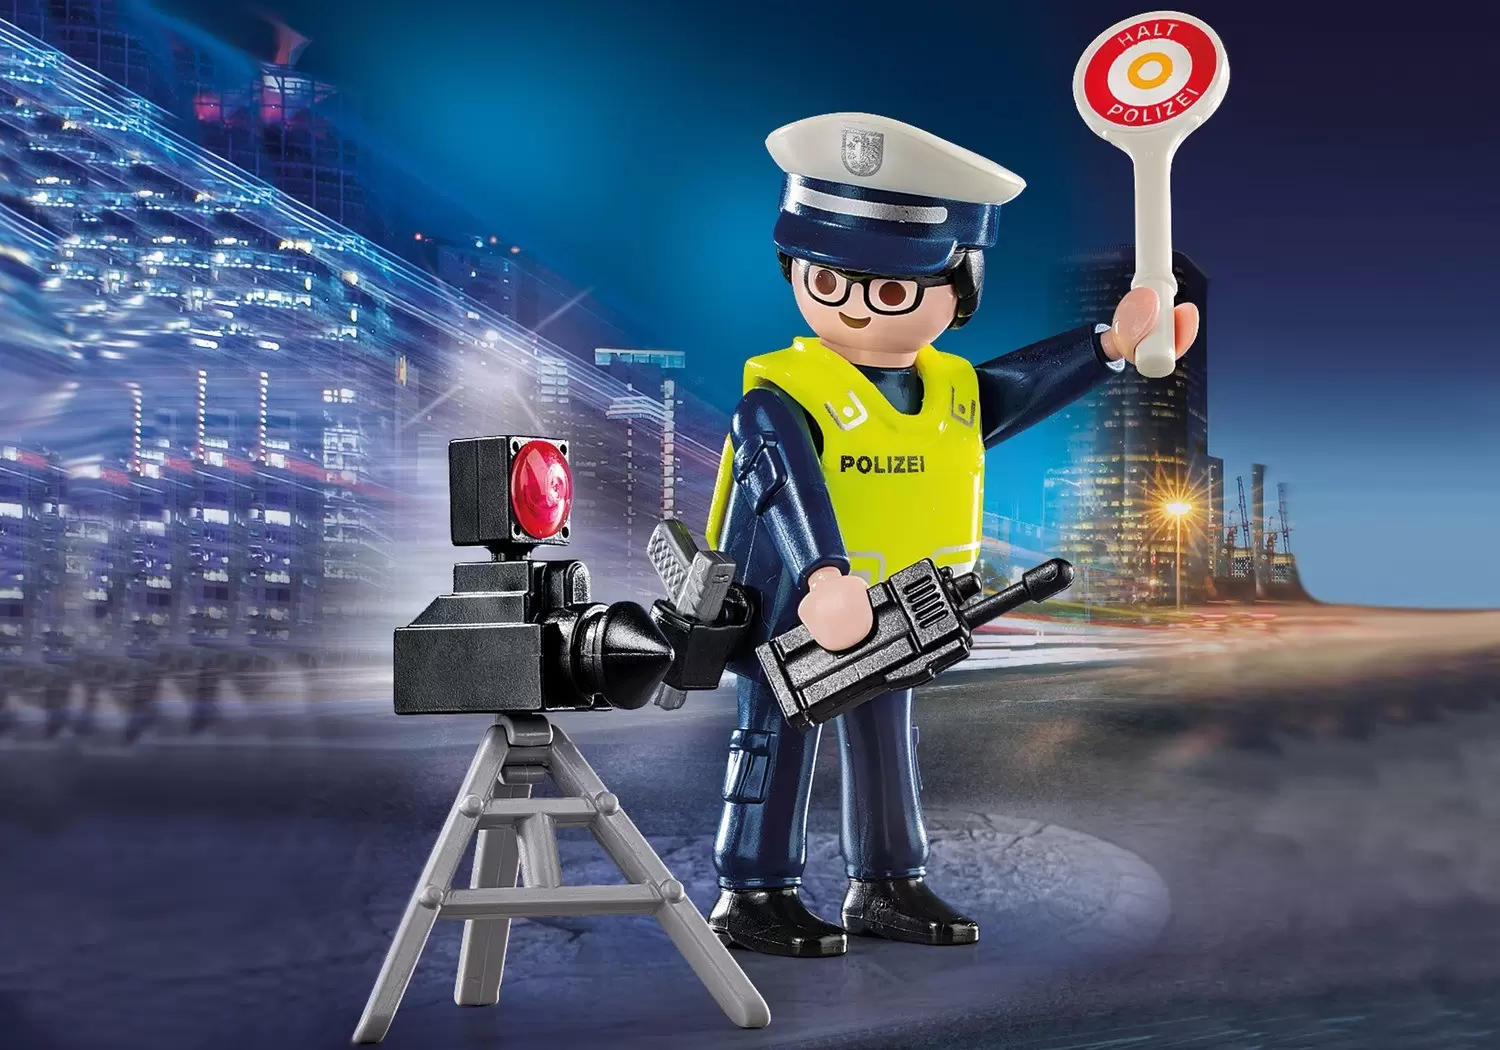 Playmobil SpecialPlus - Policeman with radar trap (Polizei)